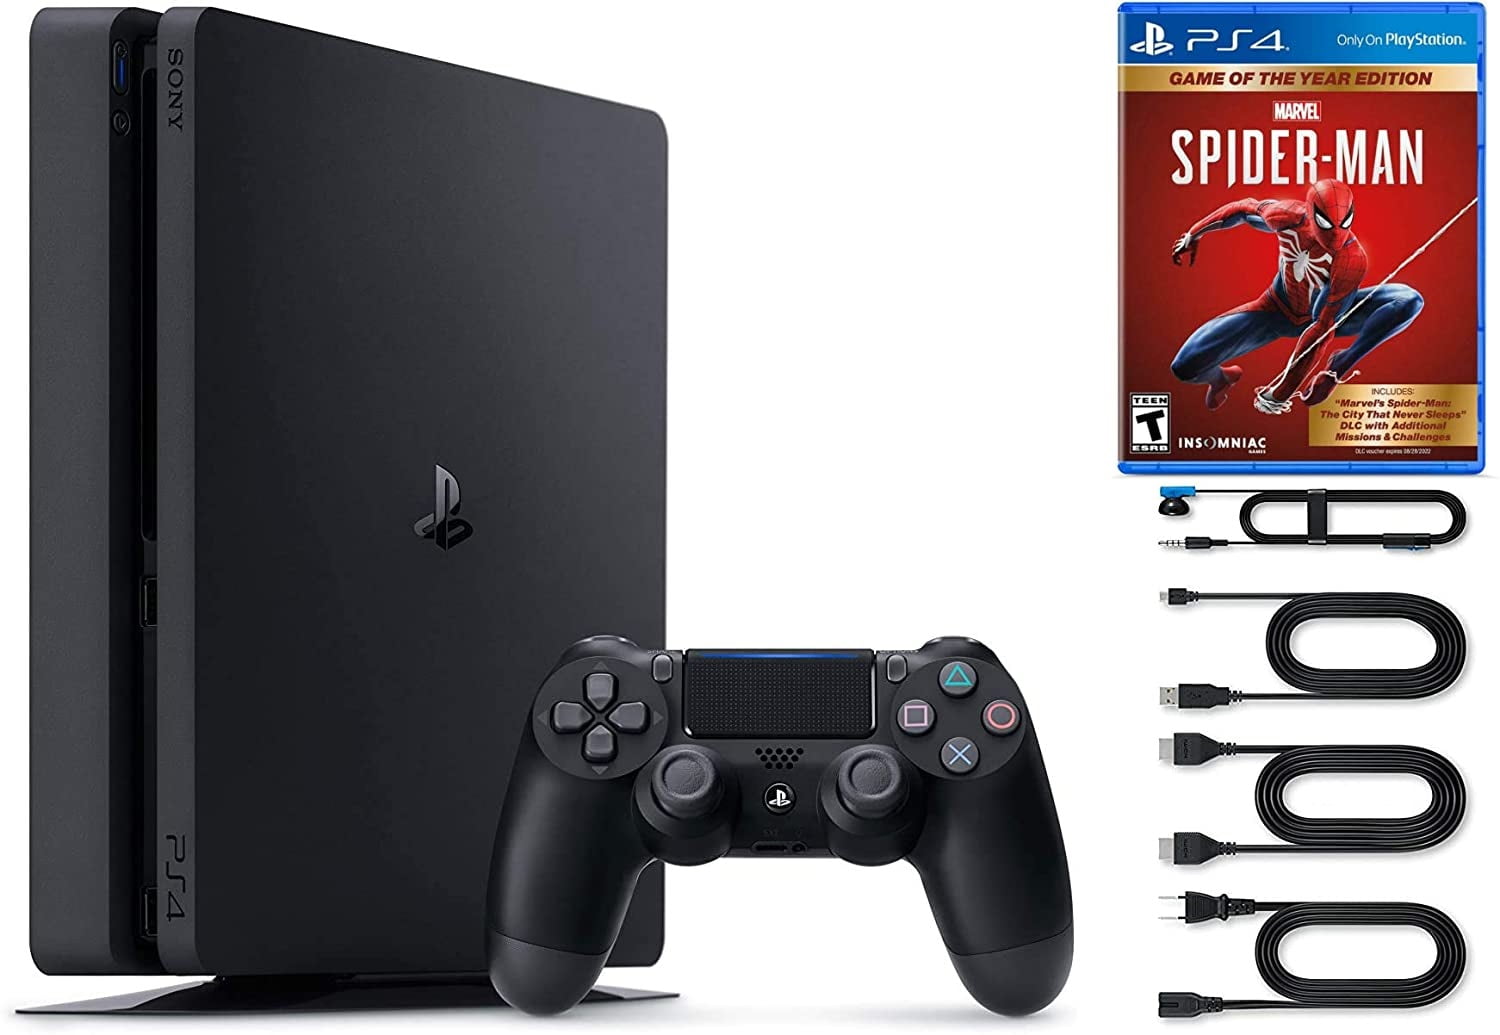 Sony PlayStation 4 Slim 1TB Spiderman Bundle, Black, CUH-2215B 